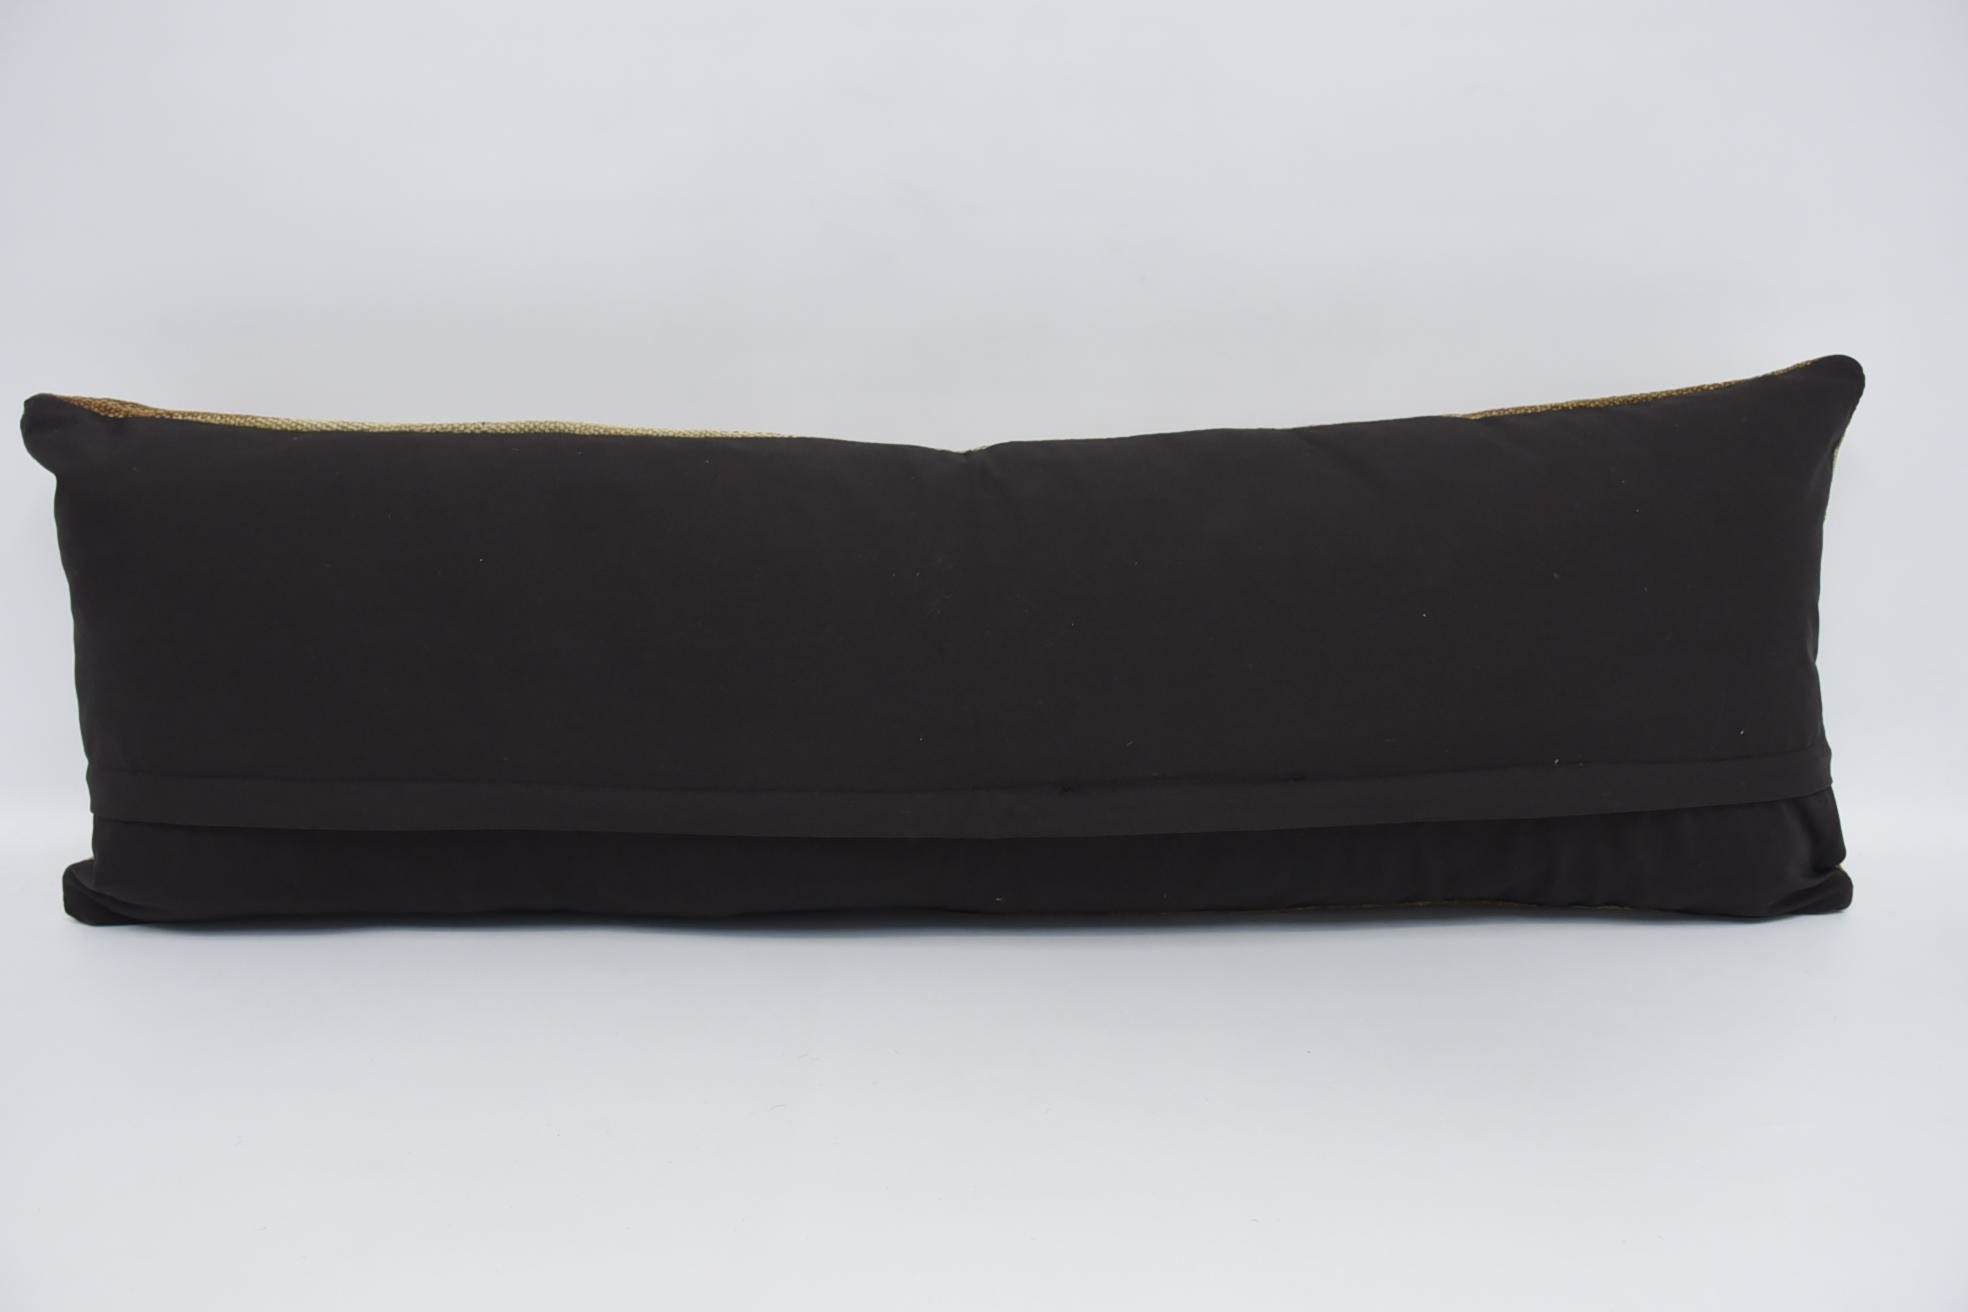 Kanepe Minder Kılıfı, 16"x48" Bej Kırlent Kılıfı, Kırlent Yastık, Dış Mekan Minder Kılıfı, Vintage Kilim Atma Yastık, Kilim Yastık Kılıfı